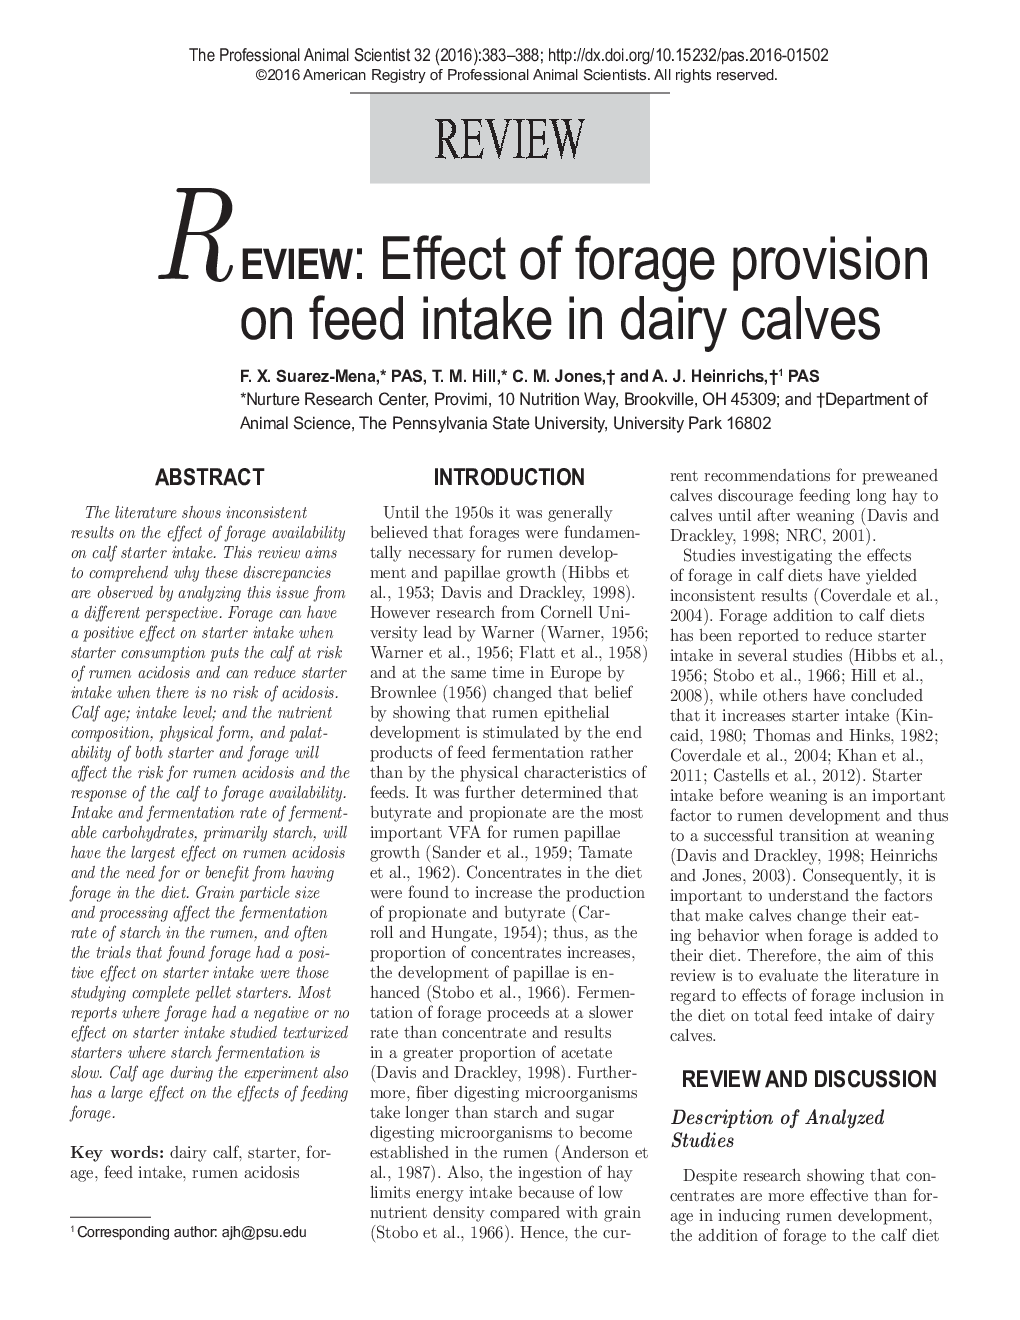 بررسی: تأثیر علوفه بر میزان مصرف خوراک گوساله های شیری 